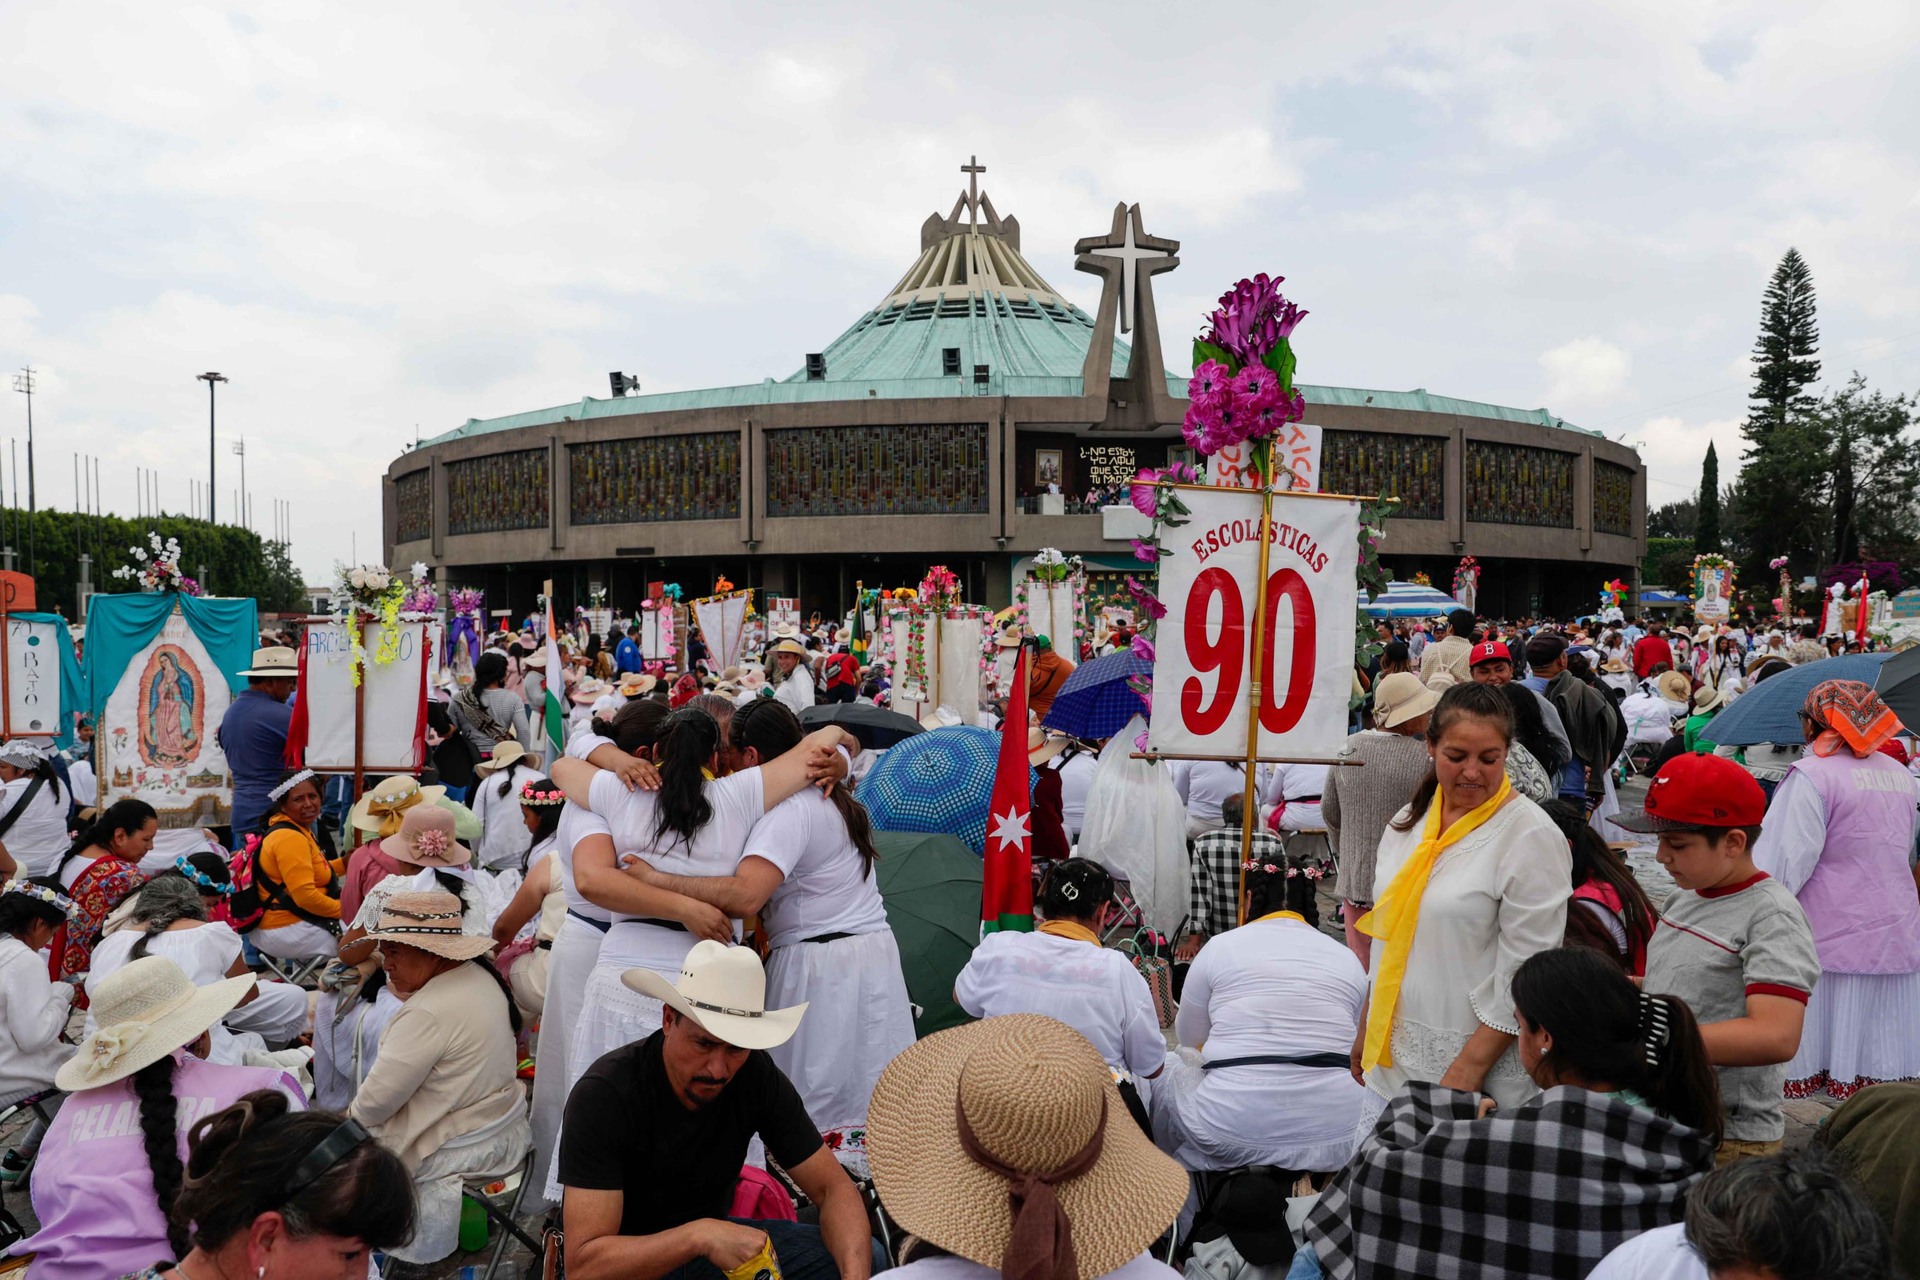 Varios grupos de peregrinos recorren los pasillos portando imágenes de la Virgen de Guadalupe, altares, y acompañados de fuegos pirotécnicos y música.